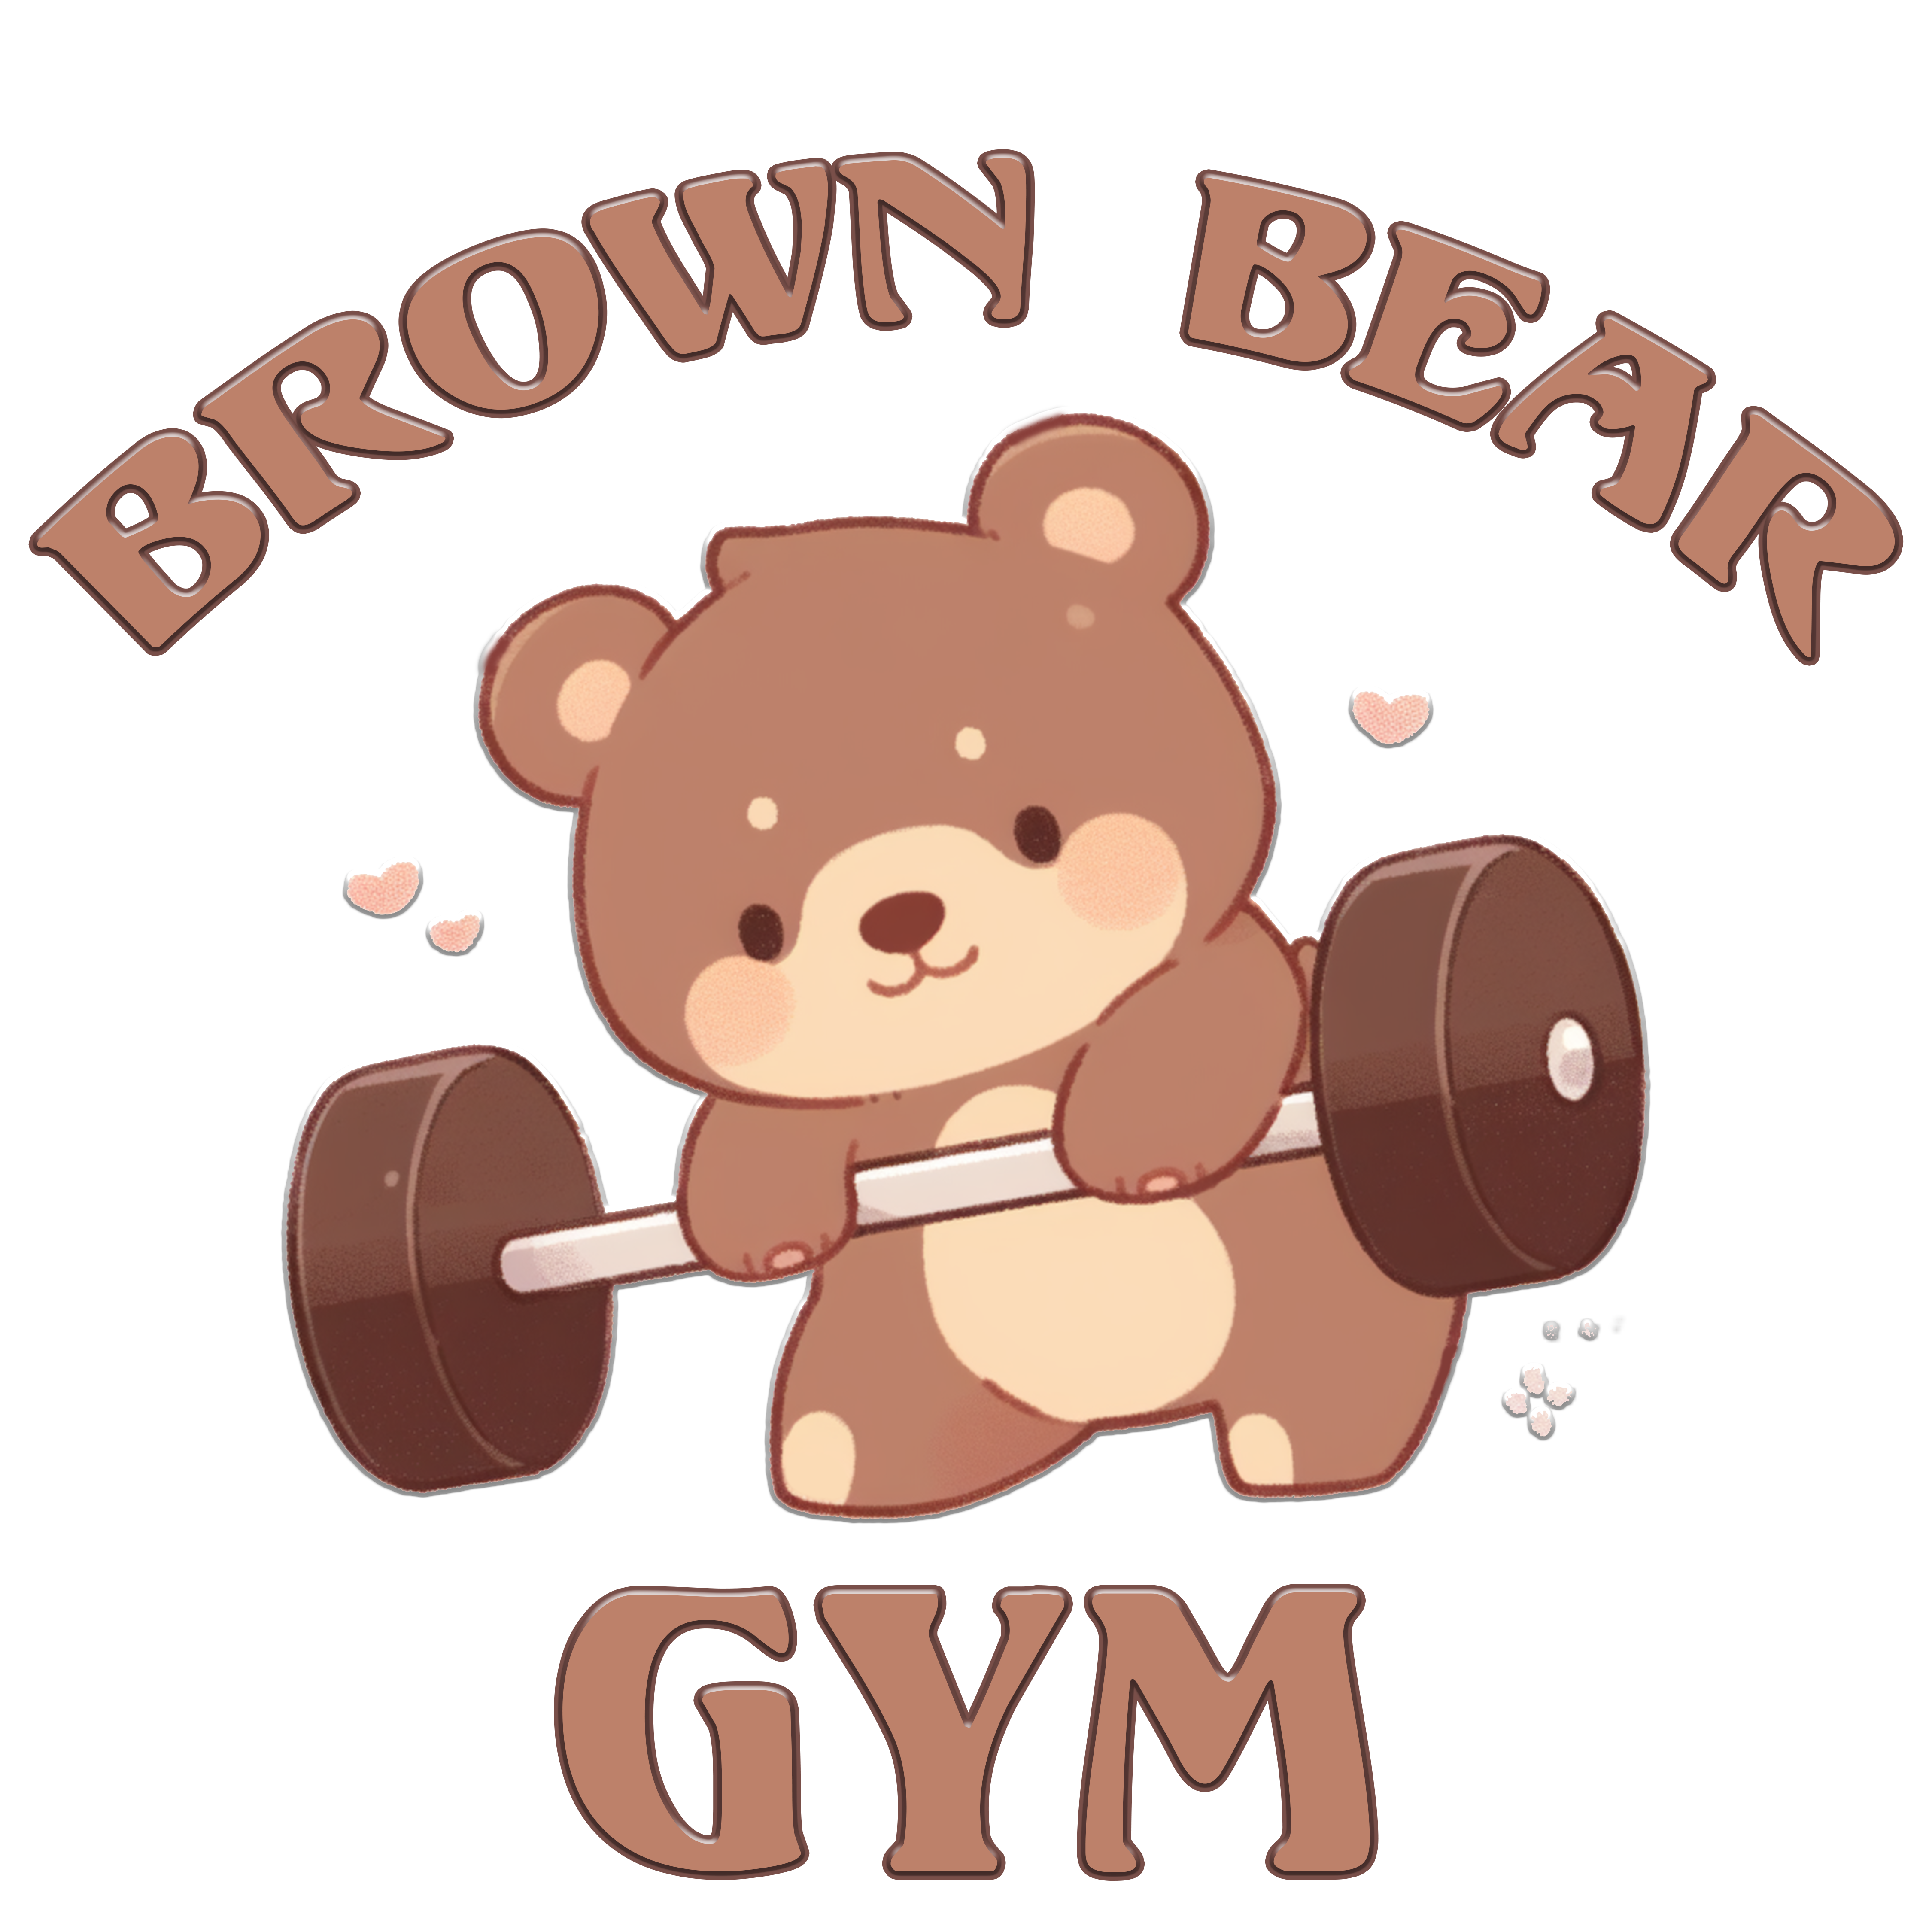 Brown Bear Gym - Cute